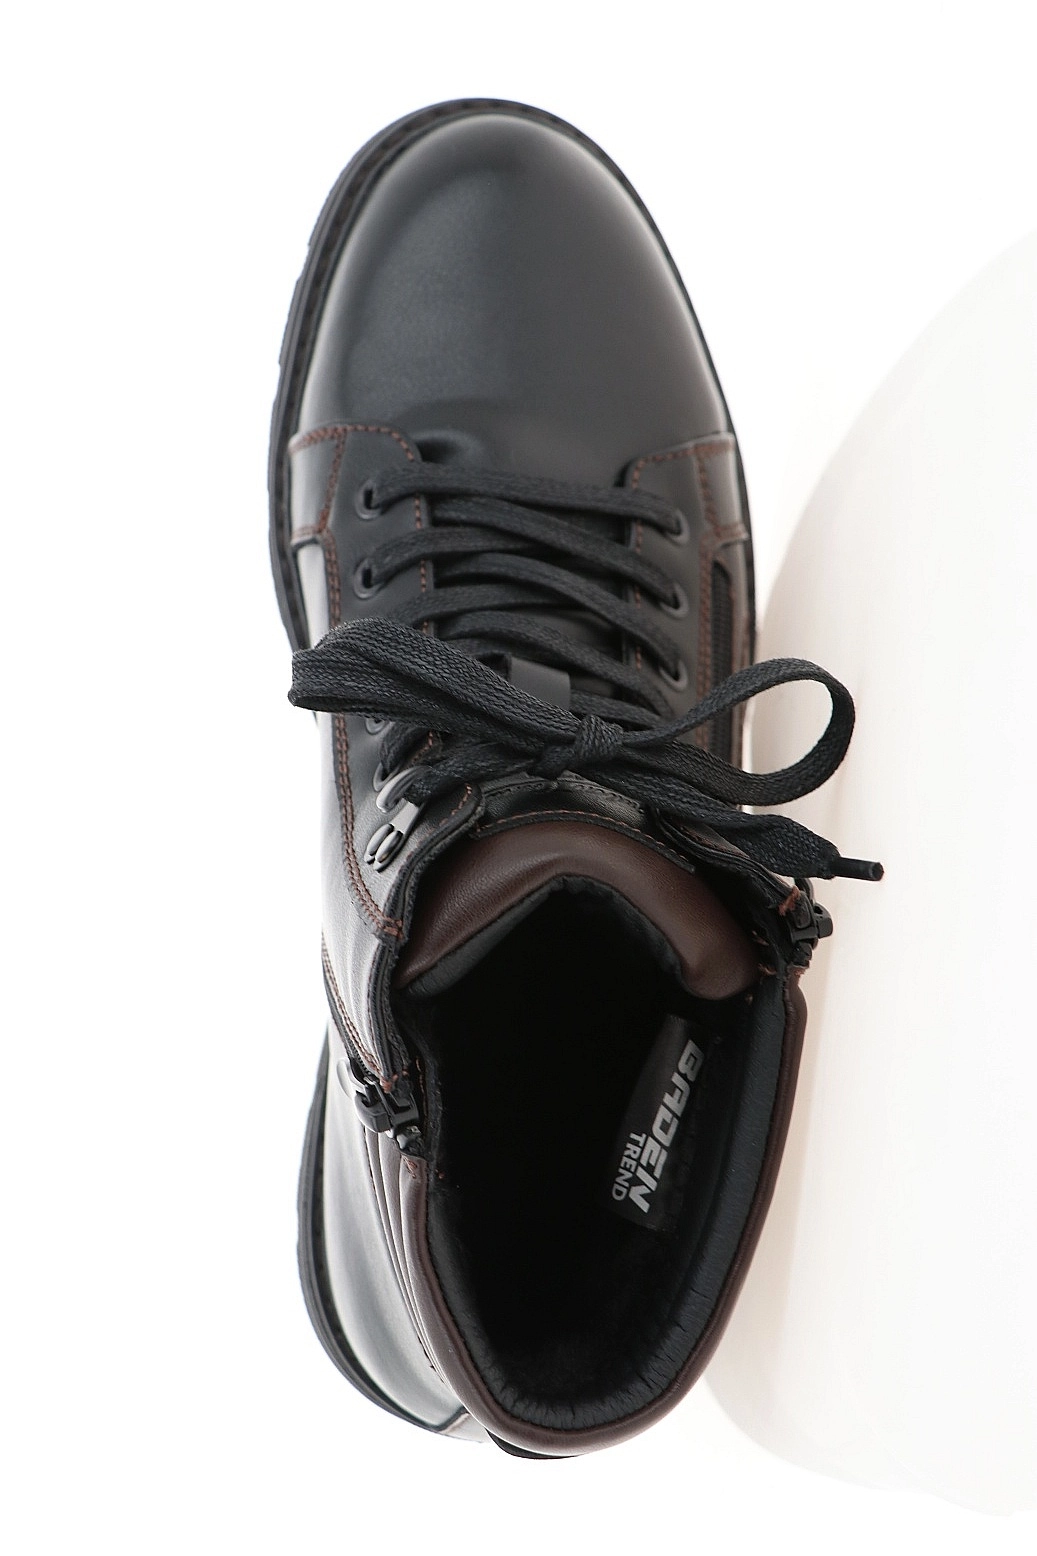 Ботинки Baden черные LZ127-030 купить в Екатеринбурге за 5690 руб